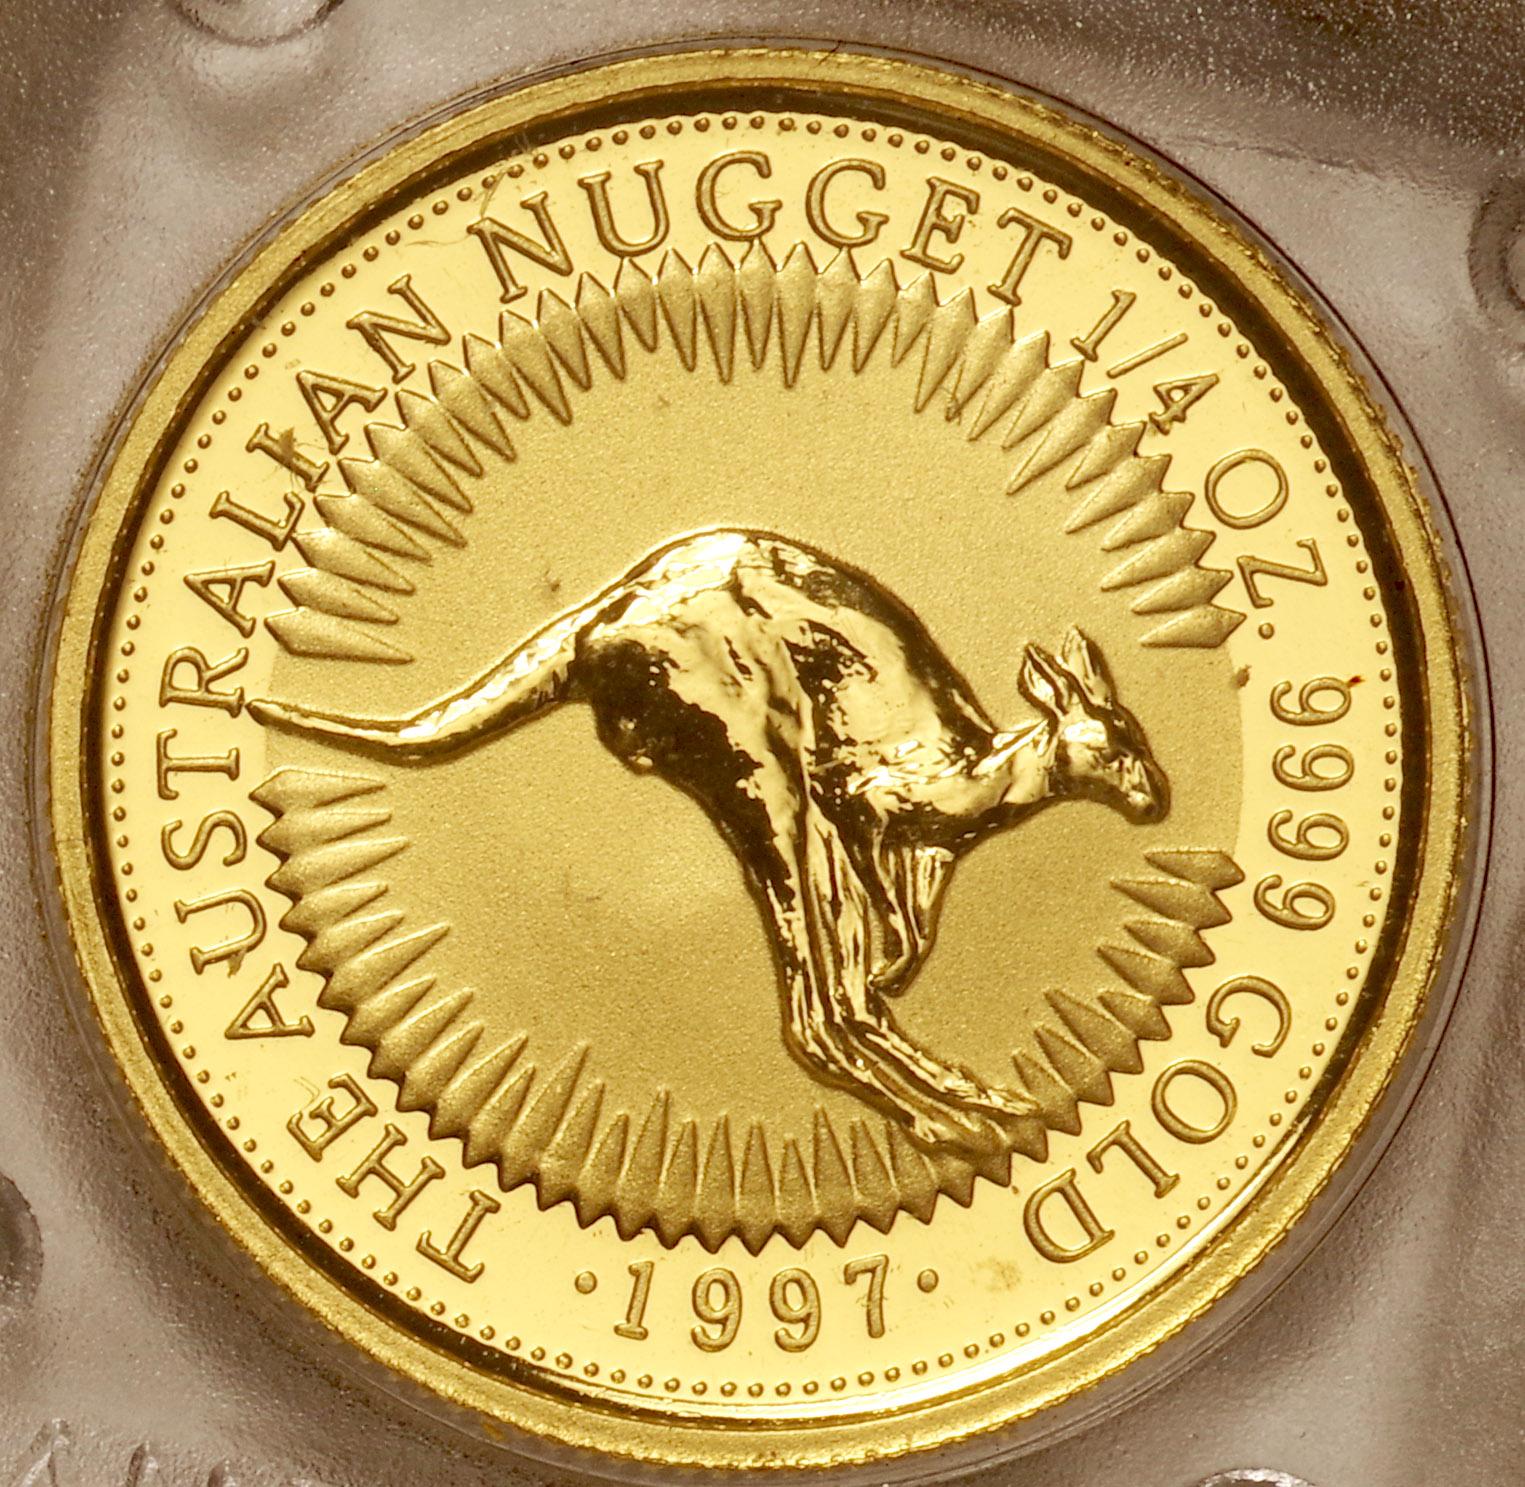 オーストラリア-Australia. カンガルー 25ドル金貨 1/4オンス 1997年 